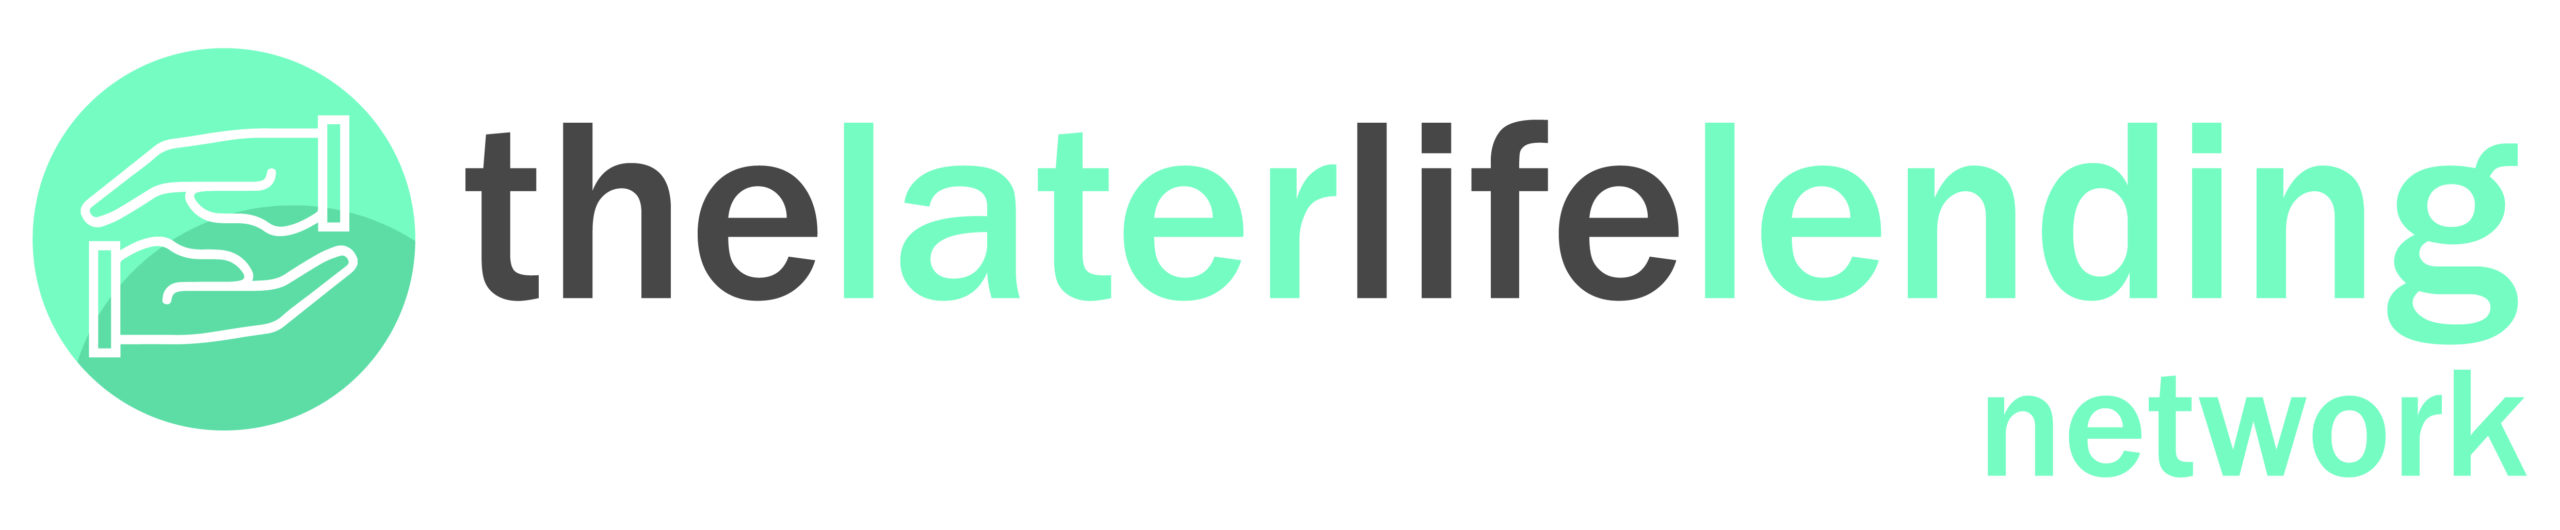 Later life lending network logo final-01